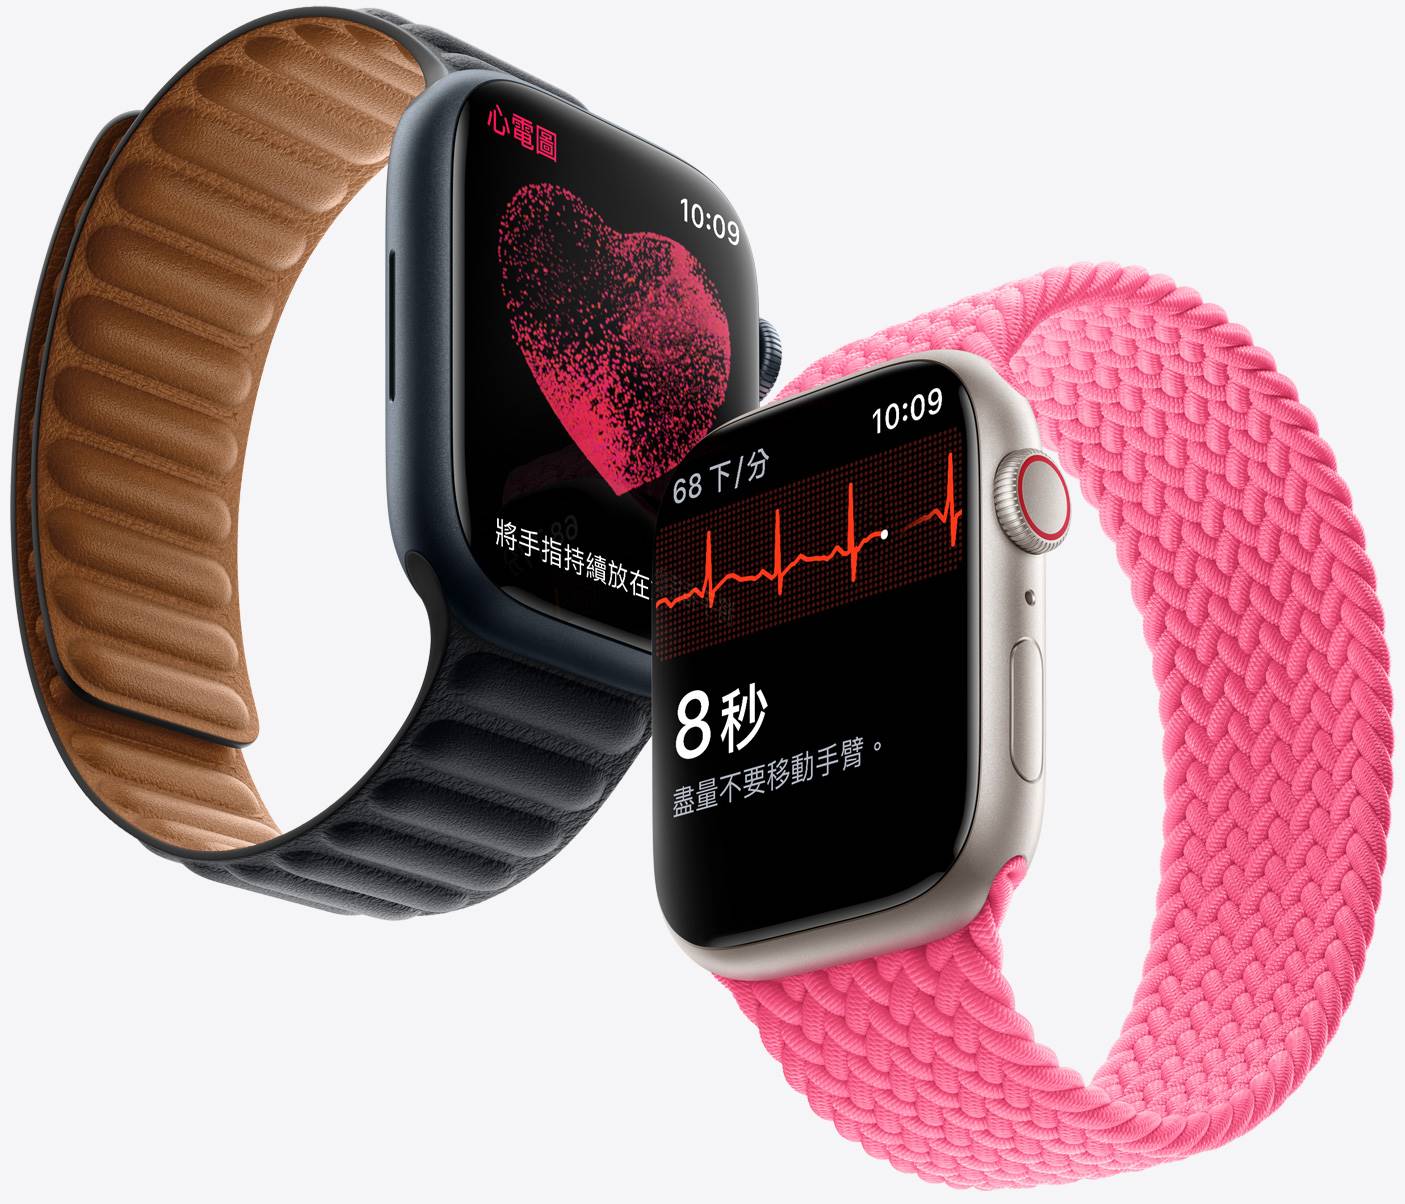 外傳新款Apple Watch可能強化新健康功能